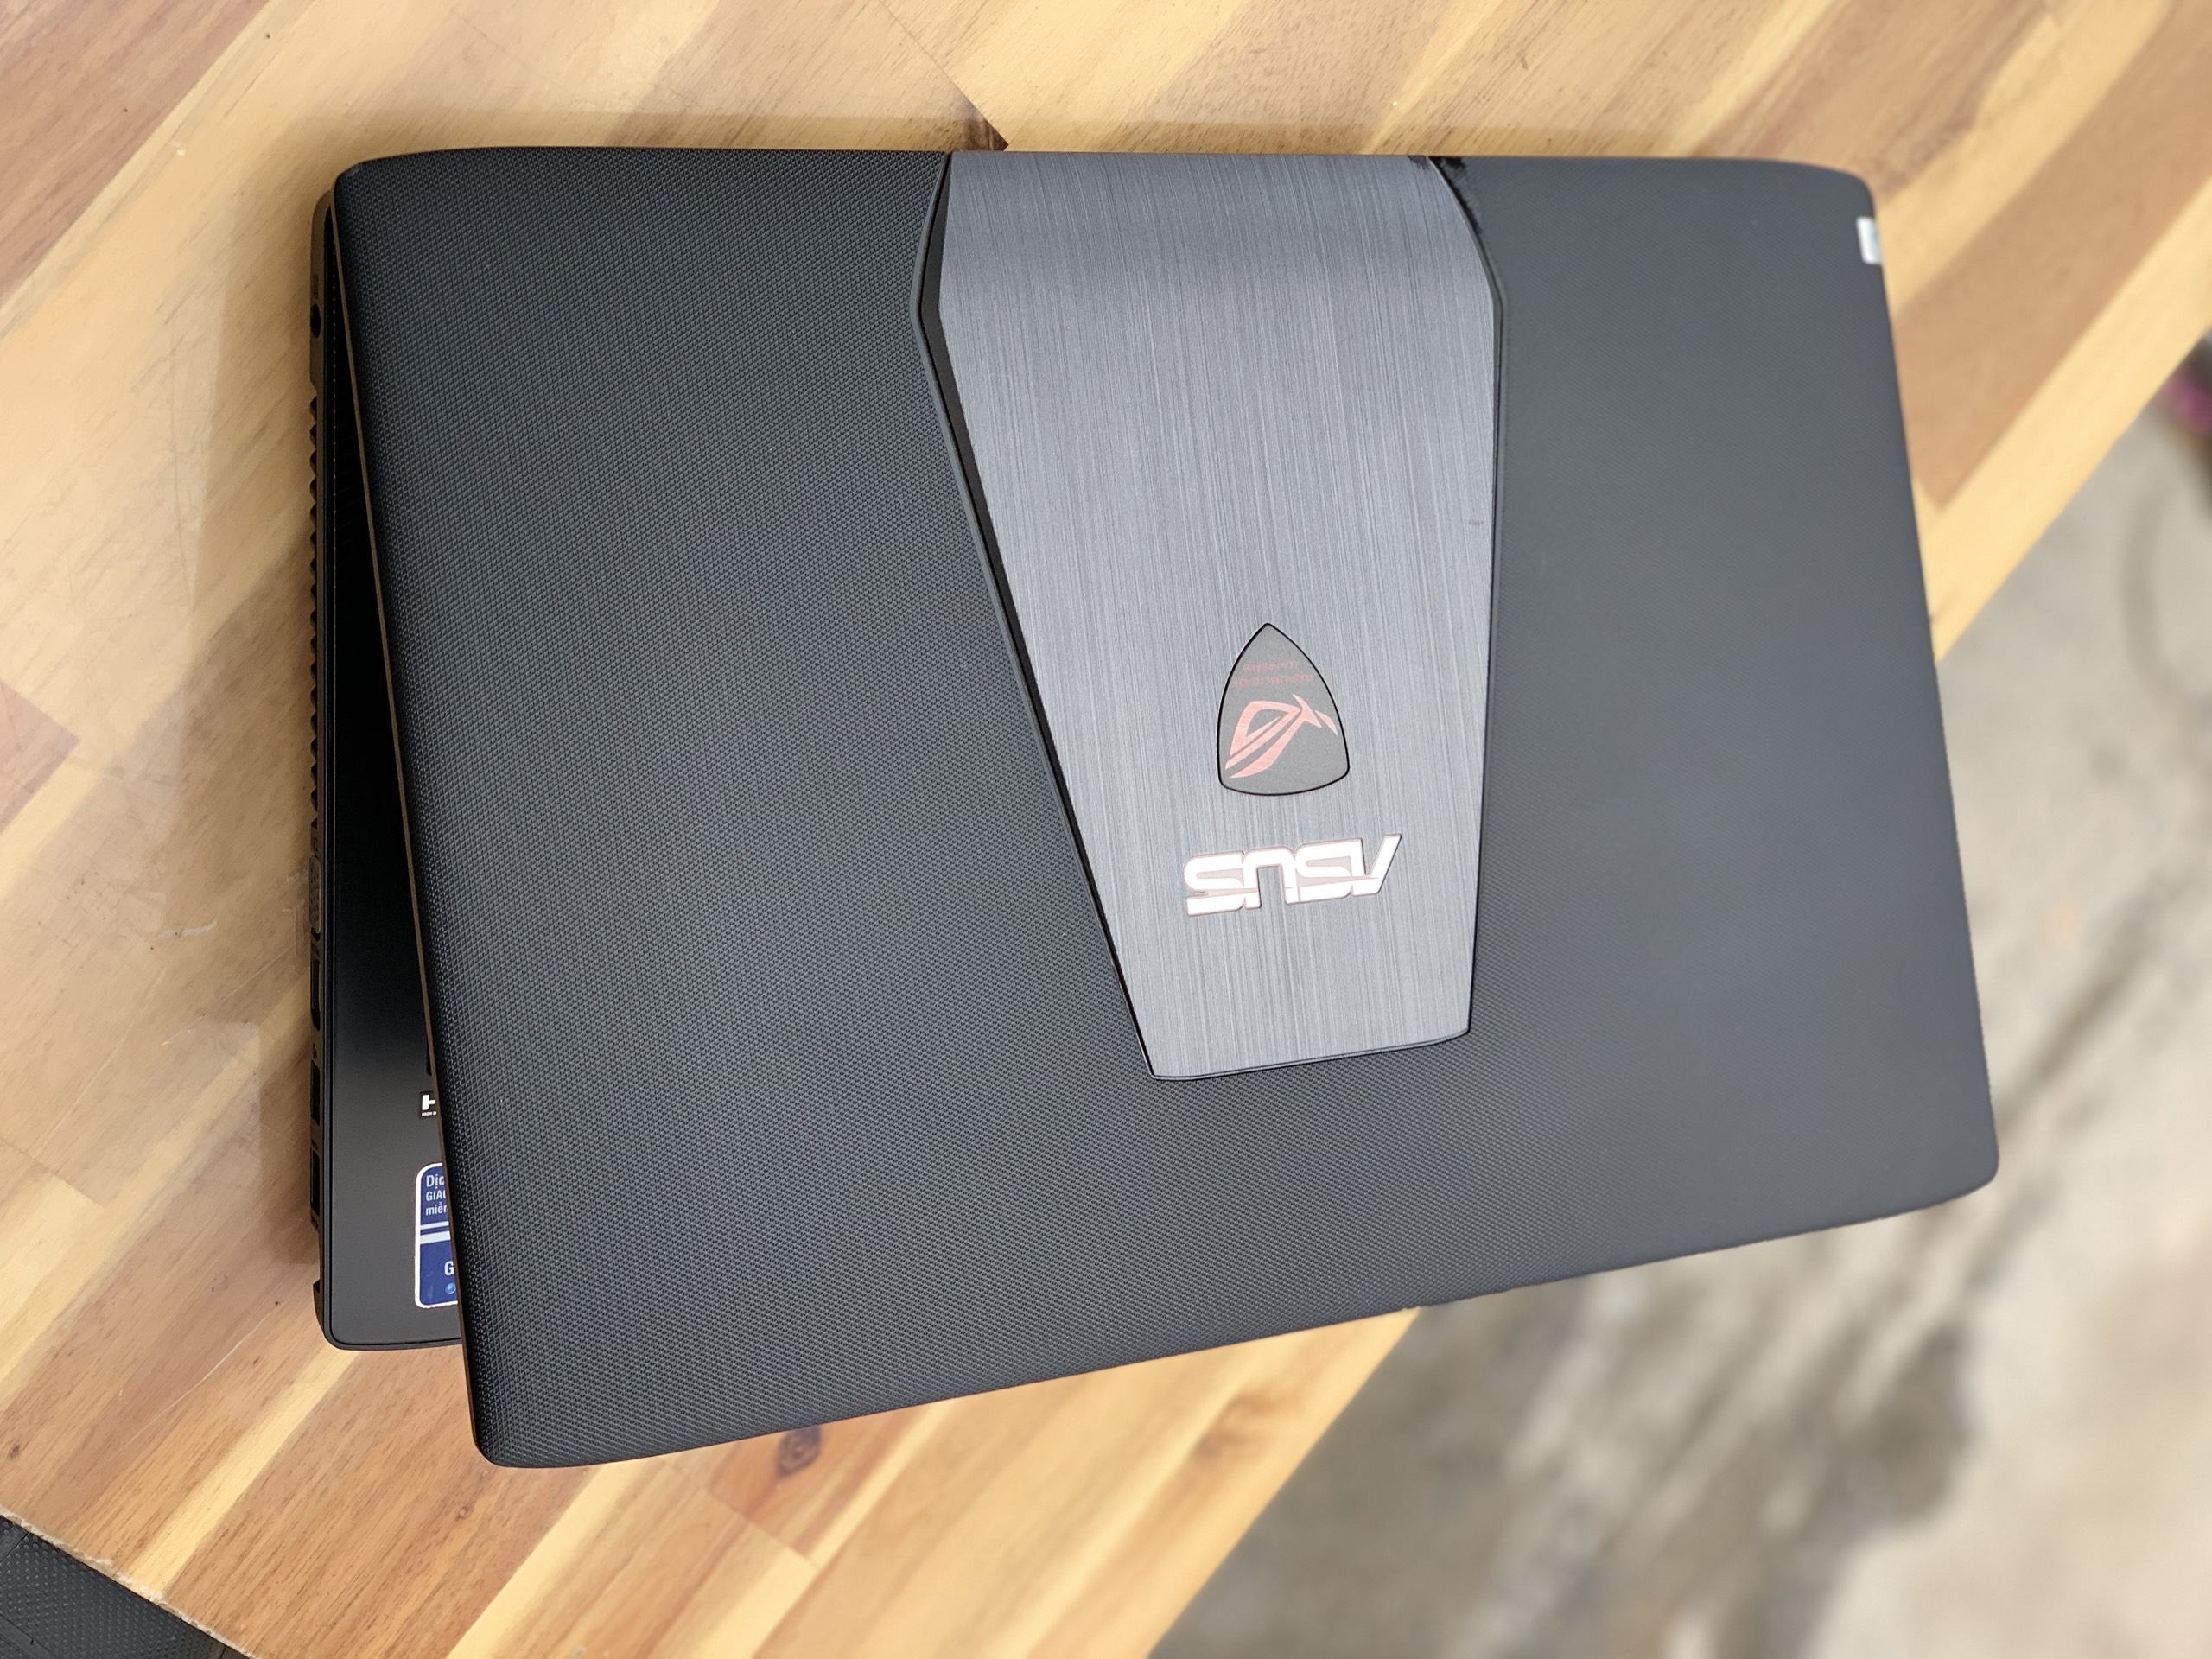 Laptop Asus Rog GL552JX, i5 4200H 8G SSD240 Vga rời GTX950M 4G LED đỏ Full Box Giá rẻ4